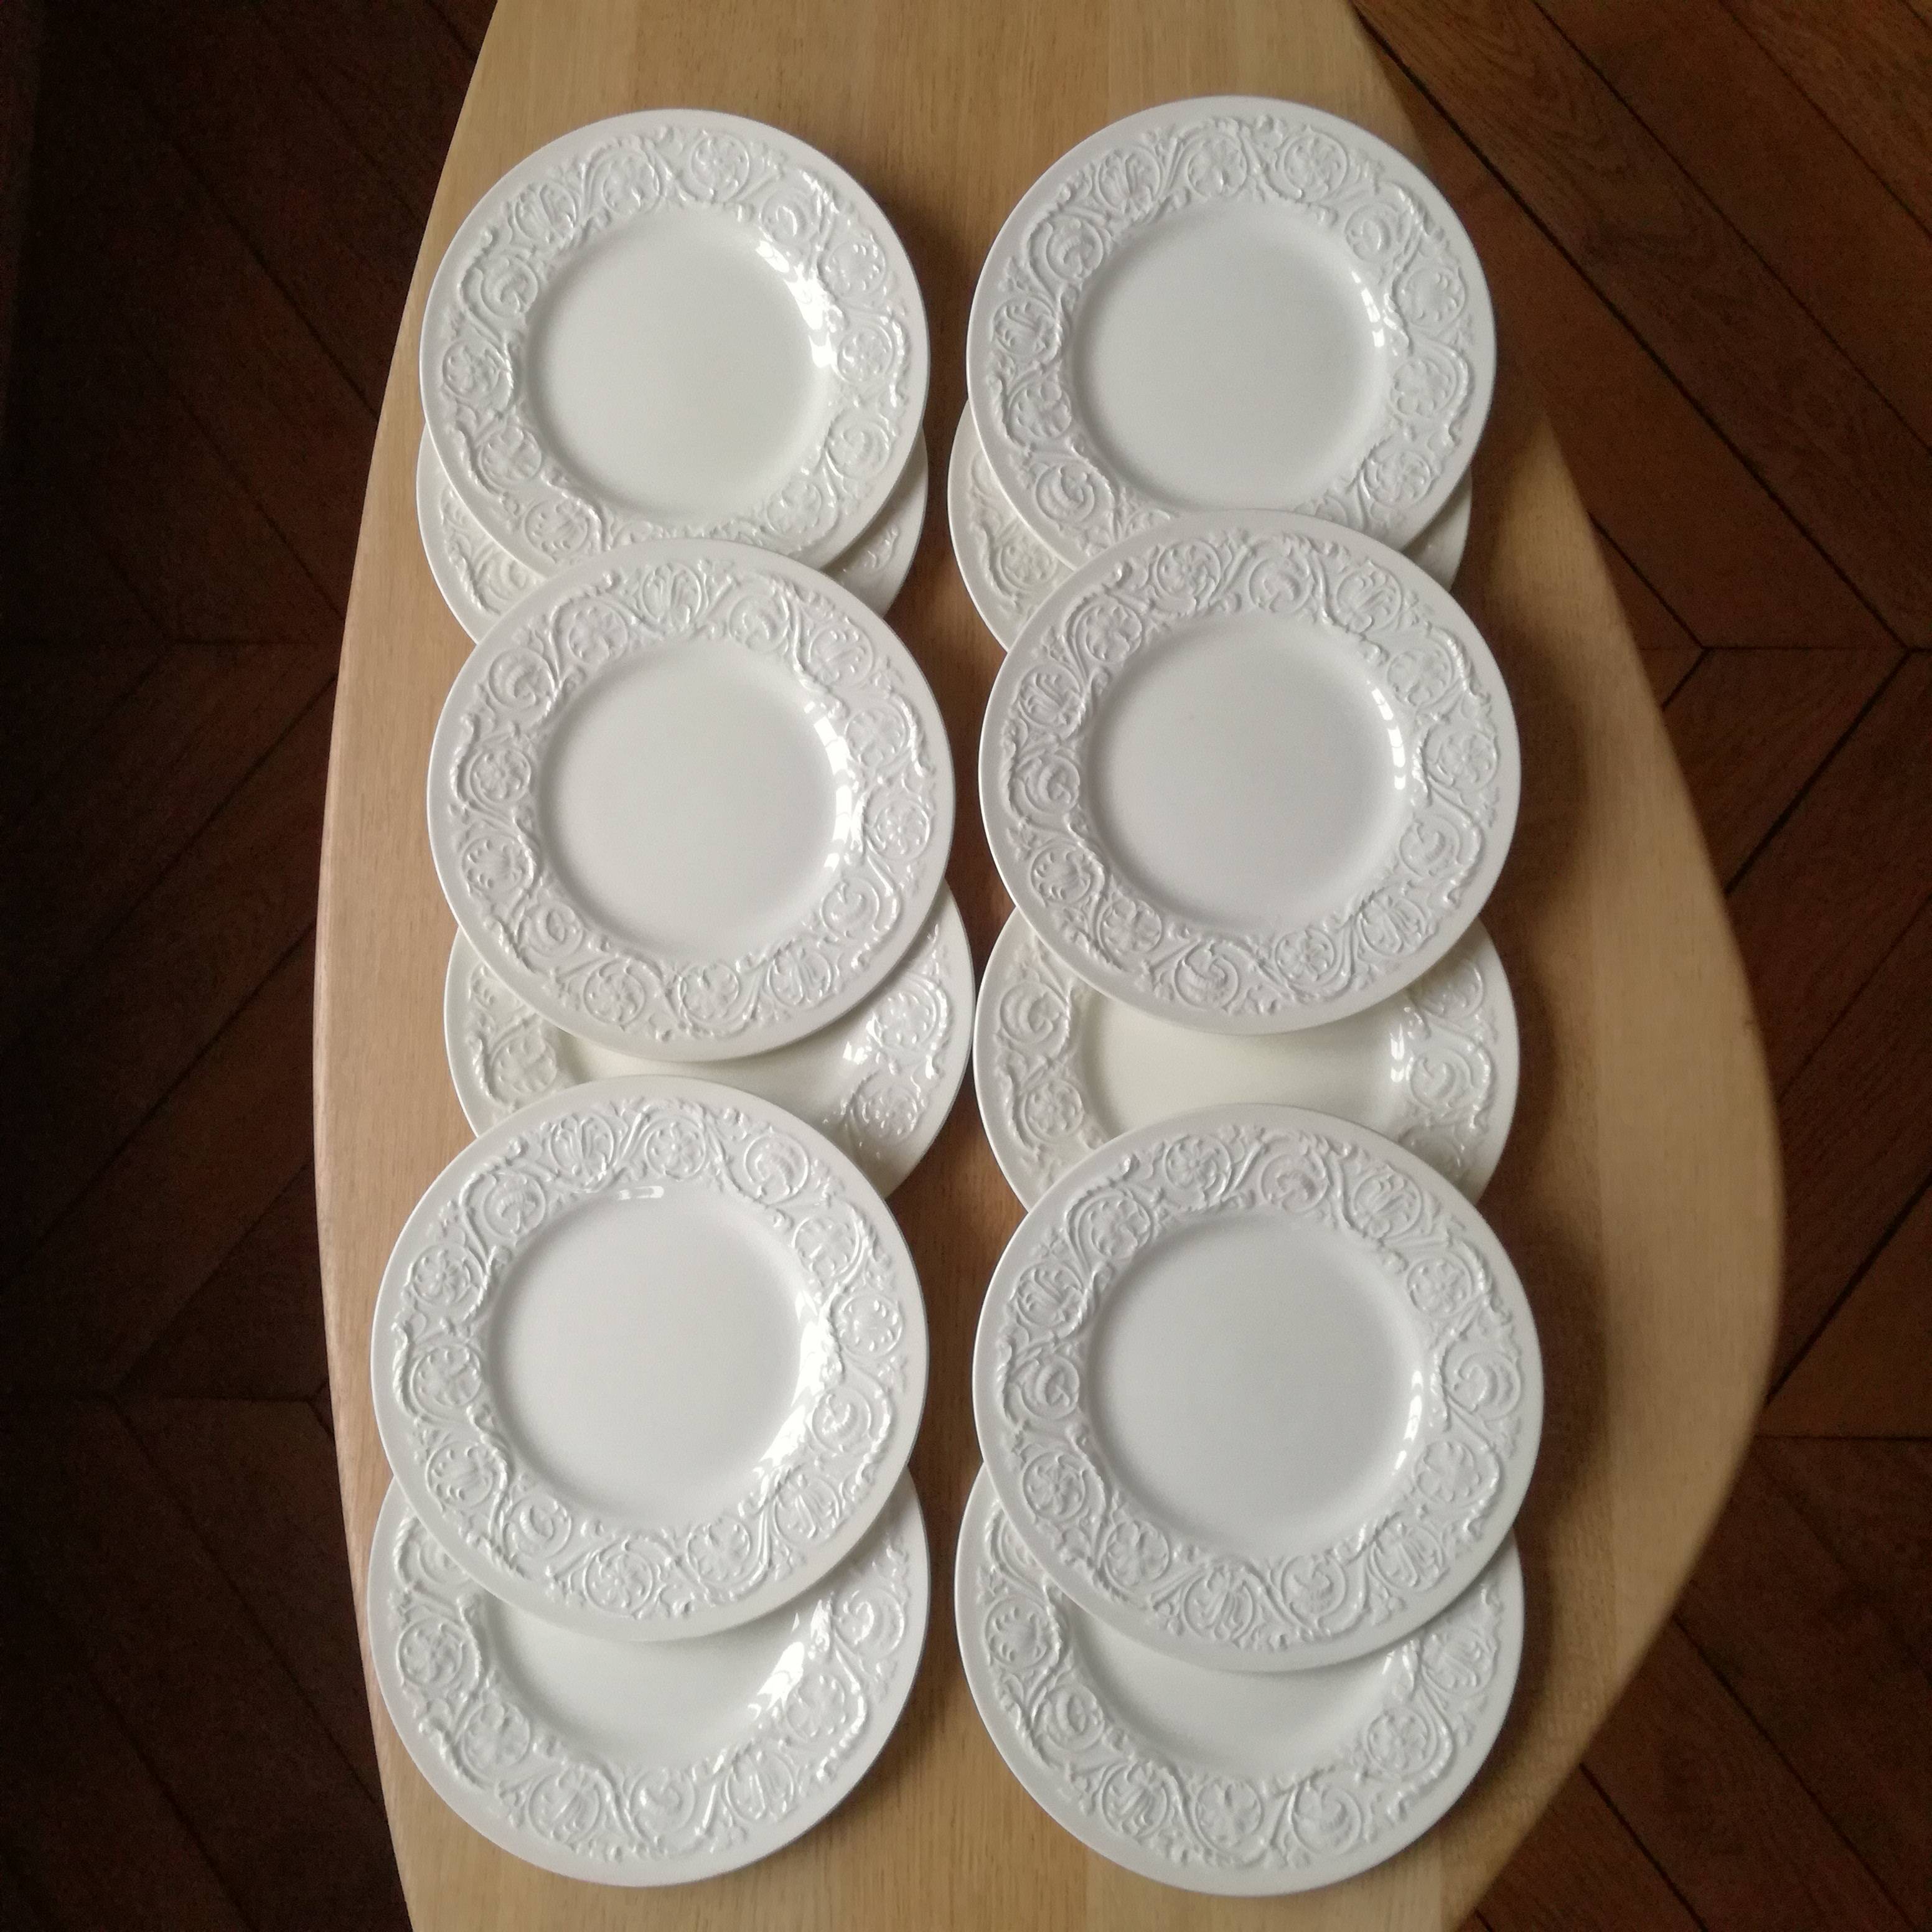 12 assiettes blanches à frise florale en relief, modèle Patrician,  Wedgwood - Début de Série